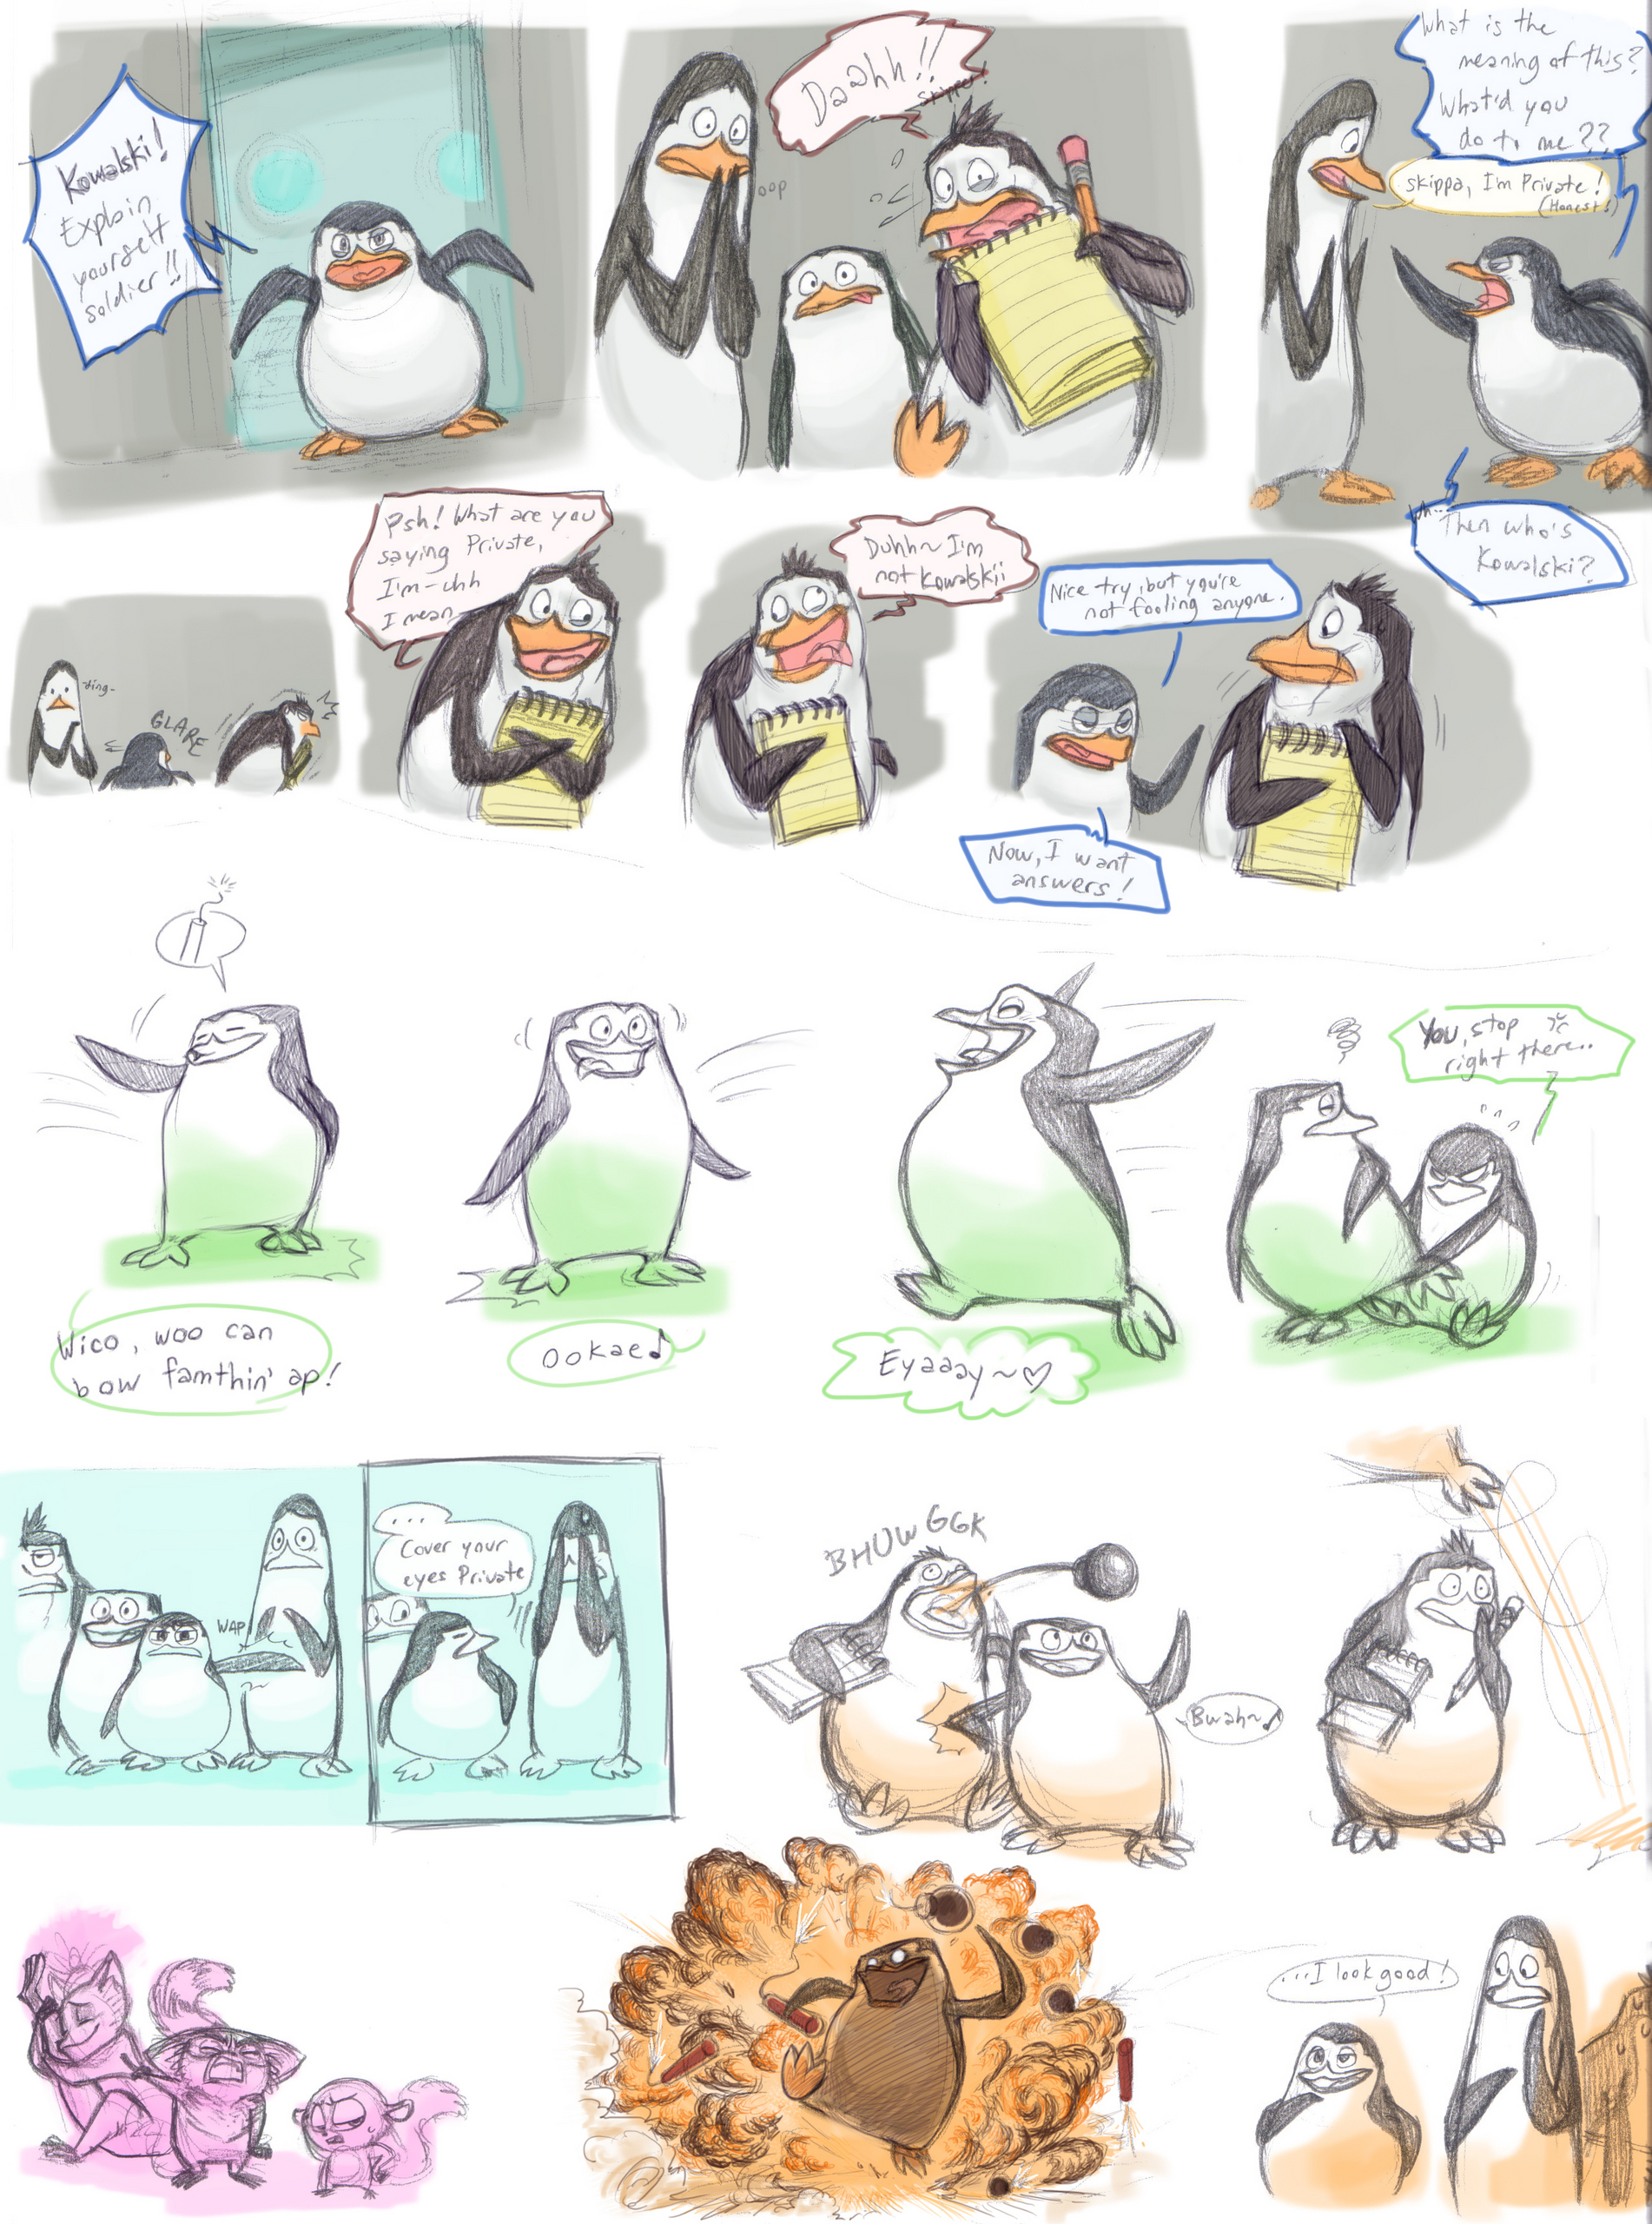 Penguins of Madagascar Images on Fanpop.